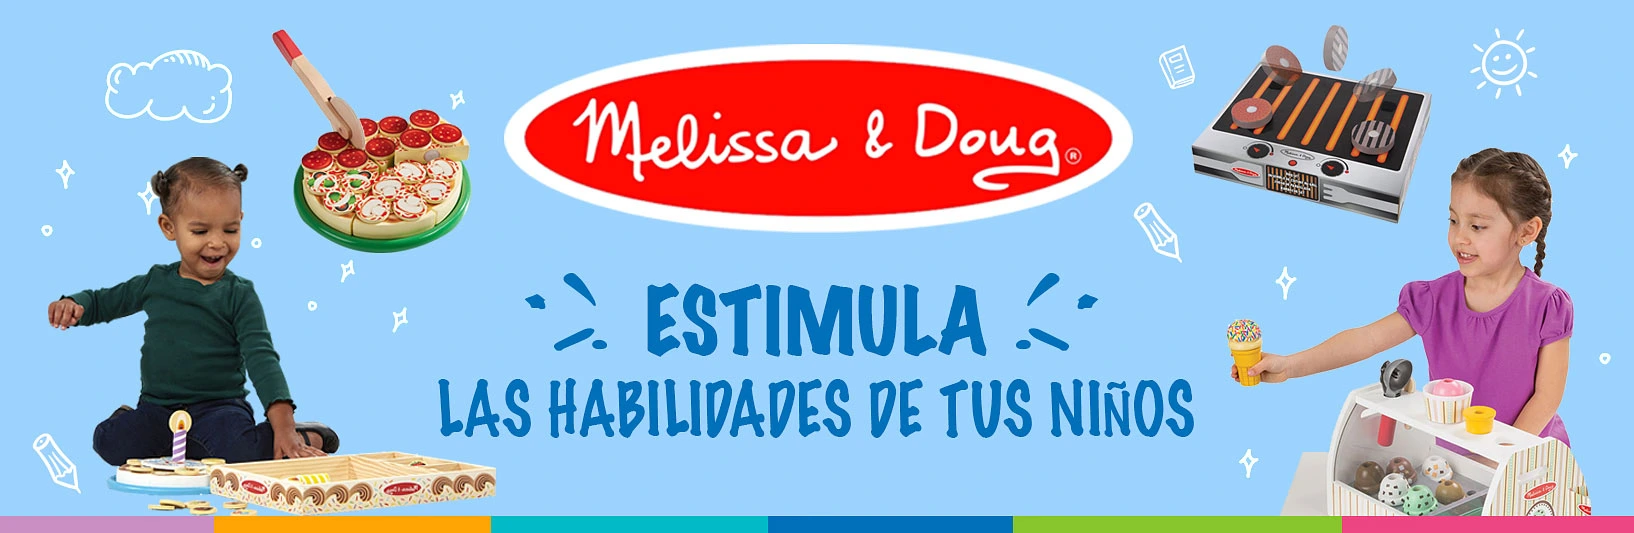 melissa and doug